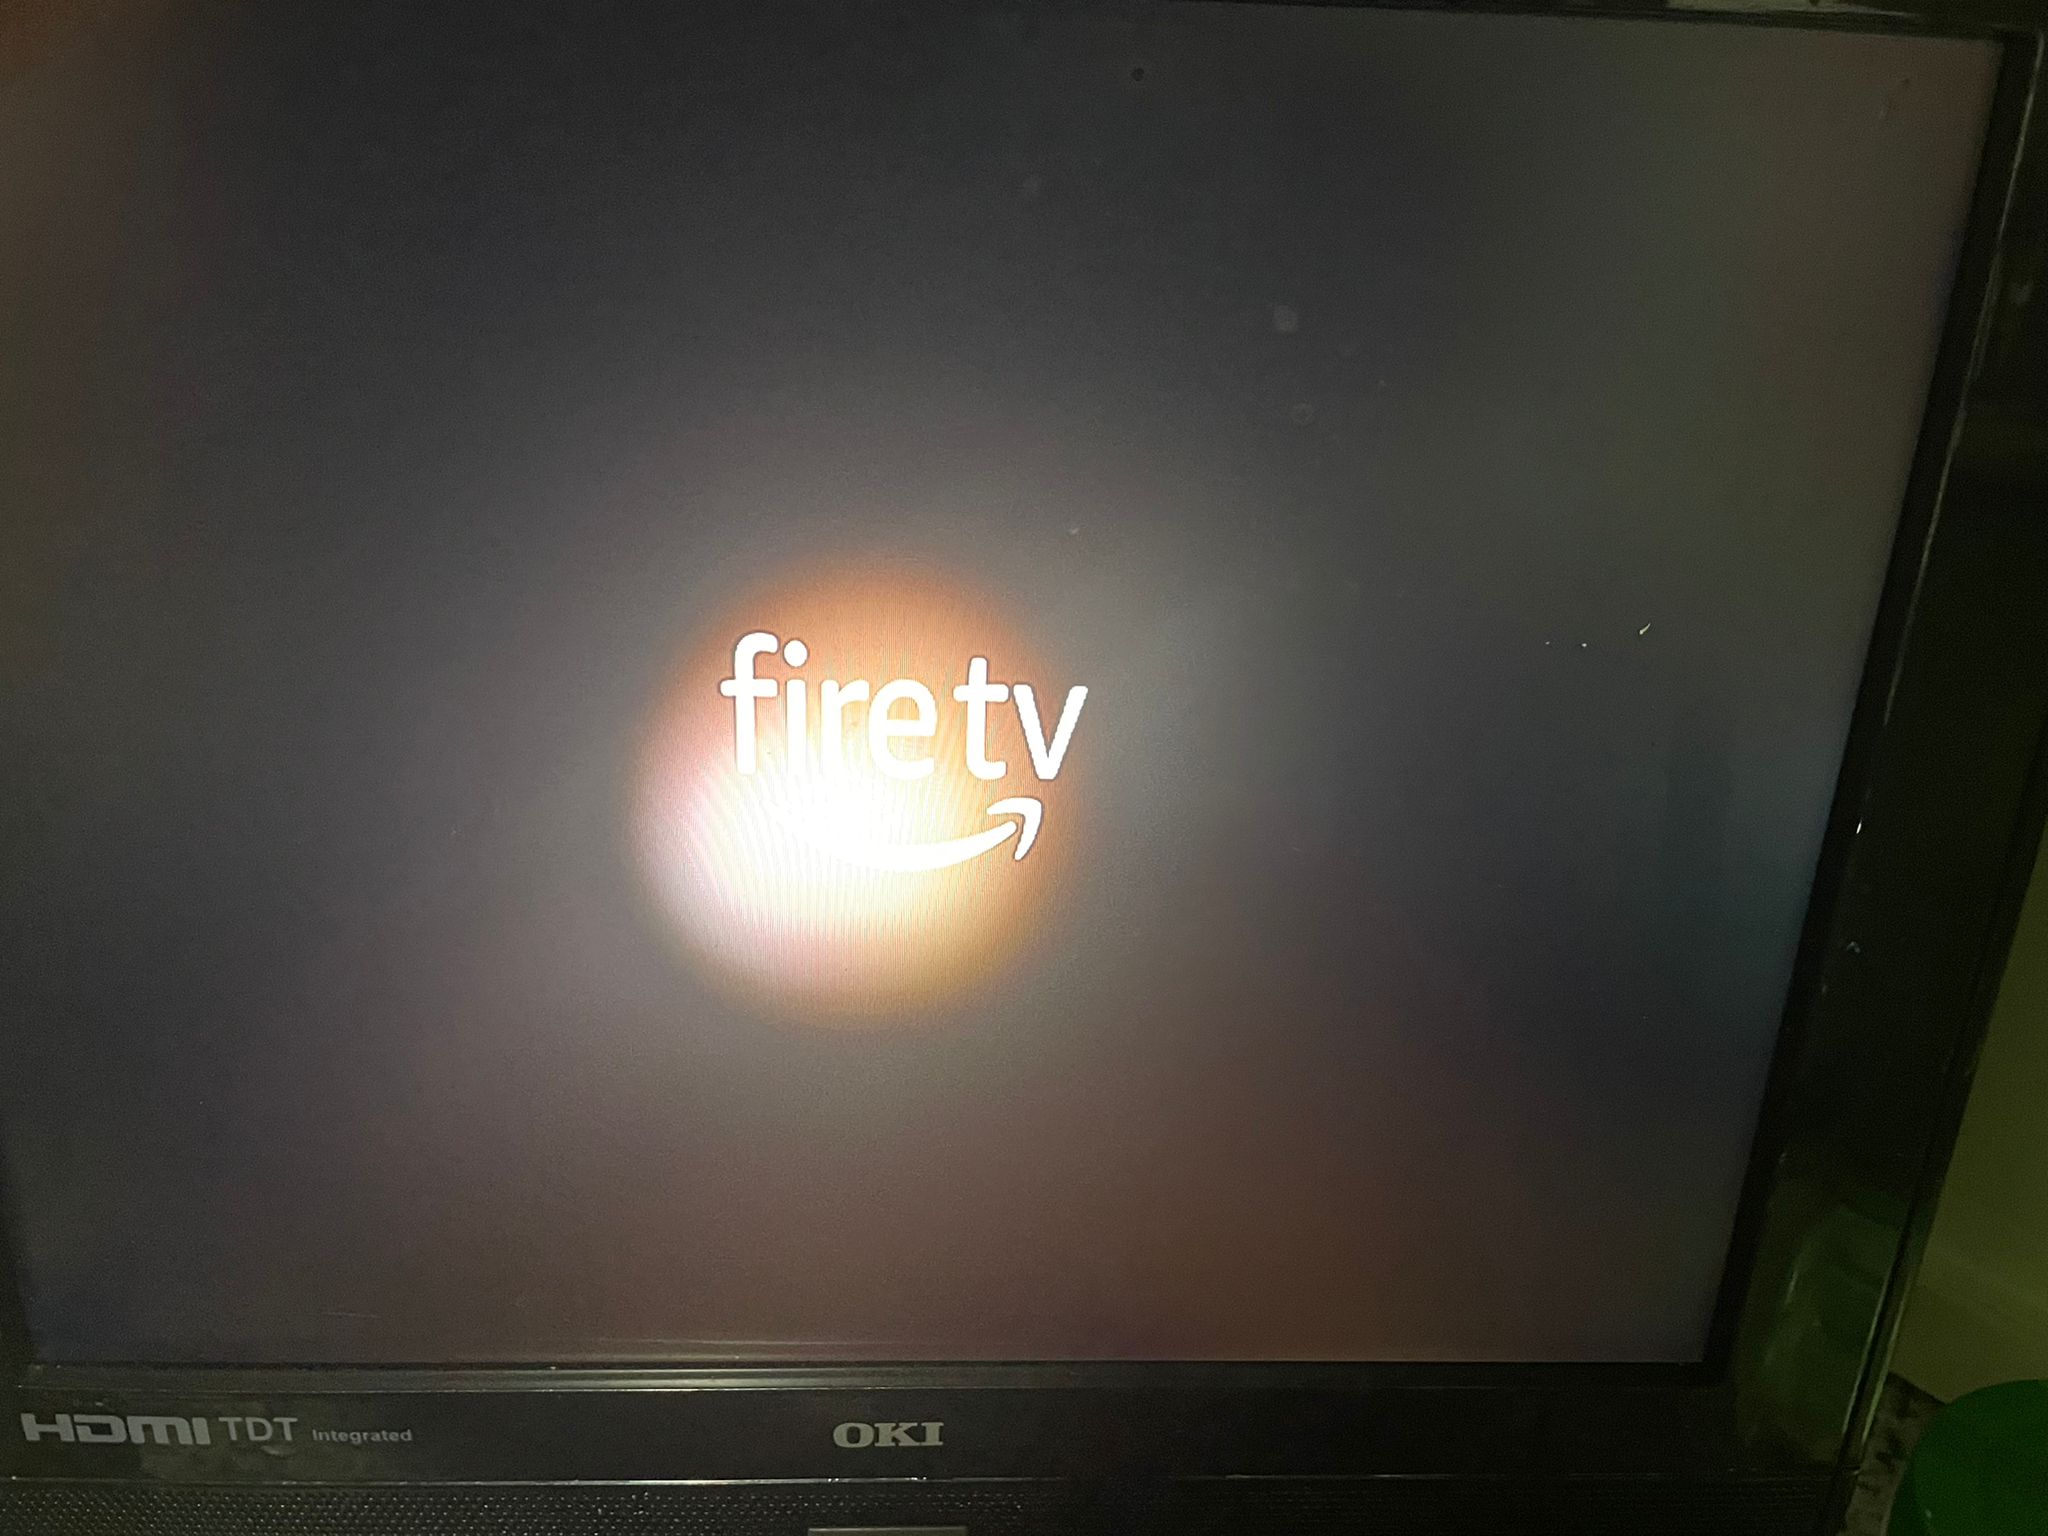 El top 48 imagen fire tv se queda en el logo